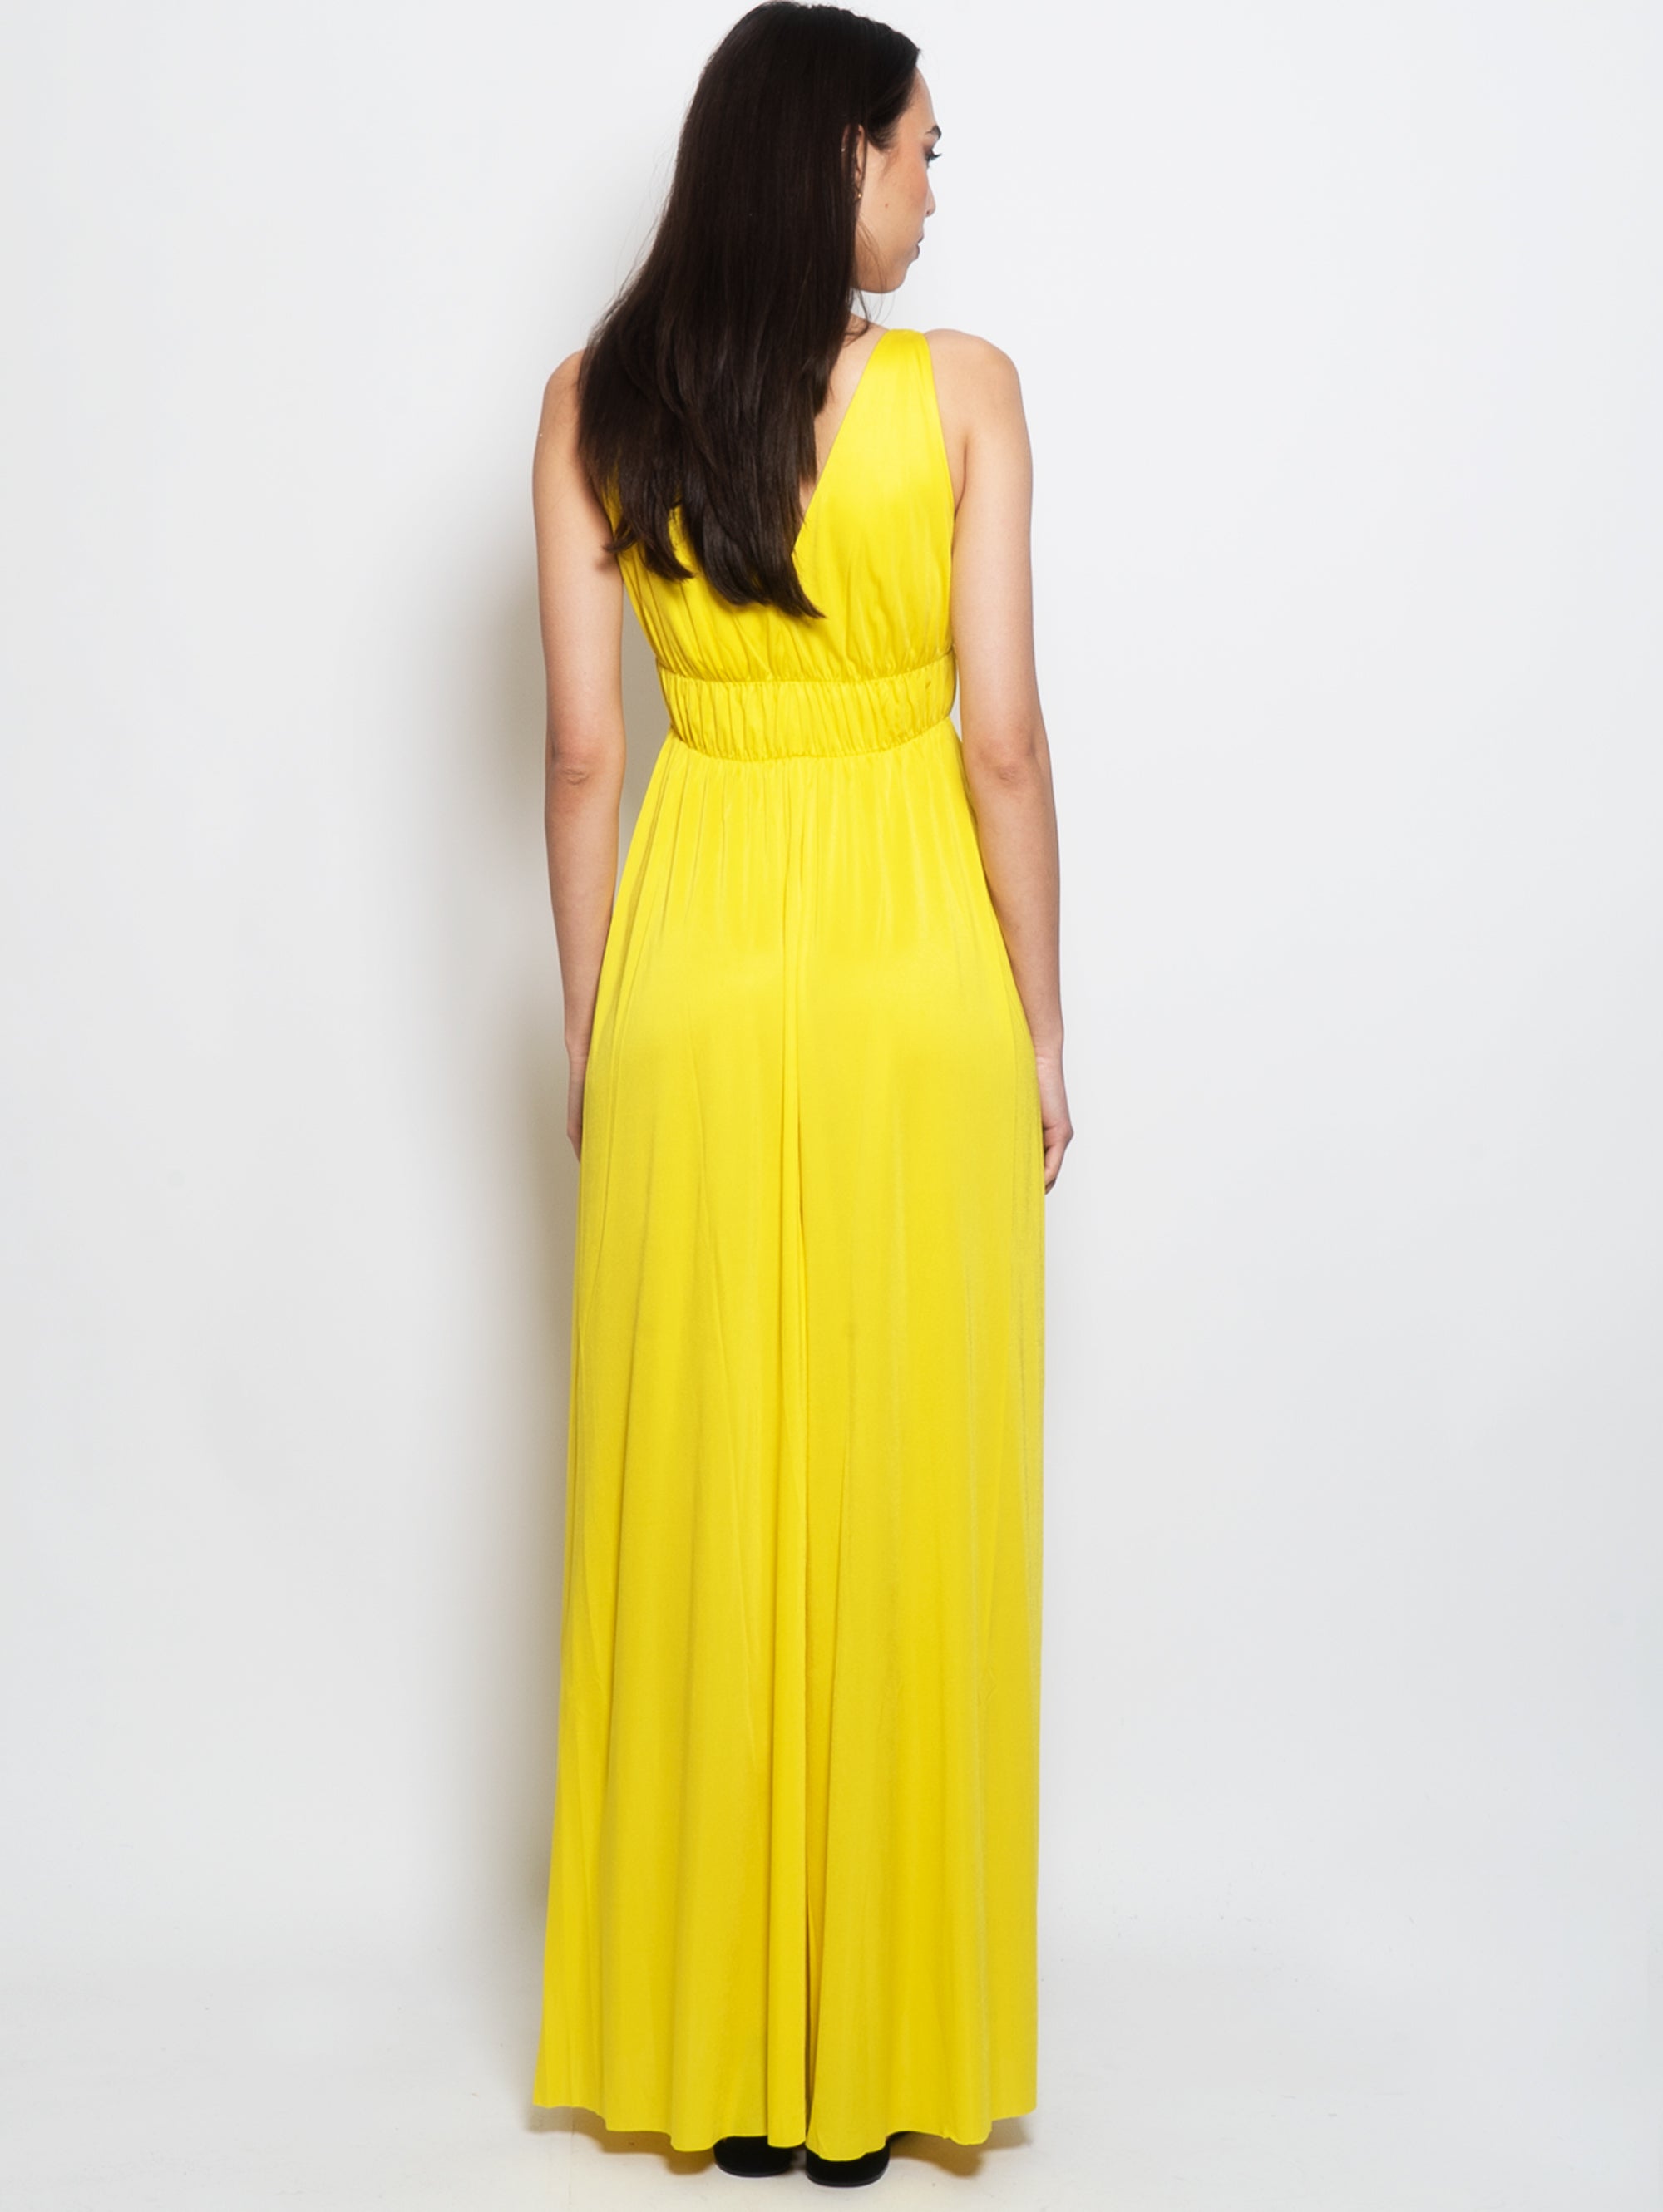 Langes gelbes Kleid im Empire-Stil